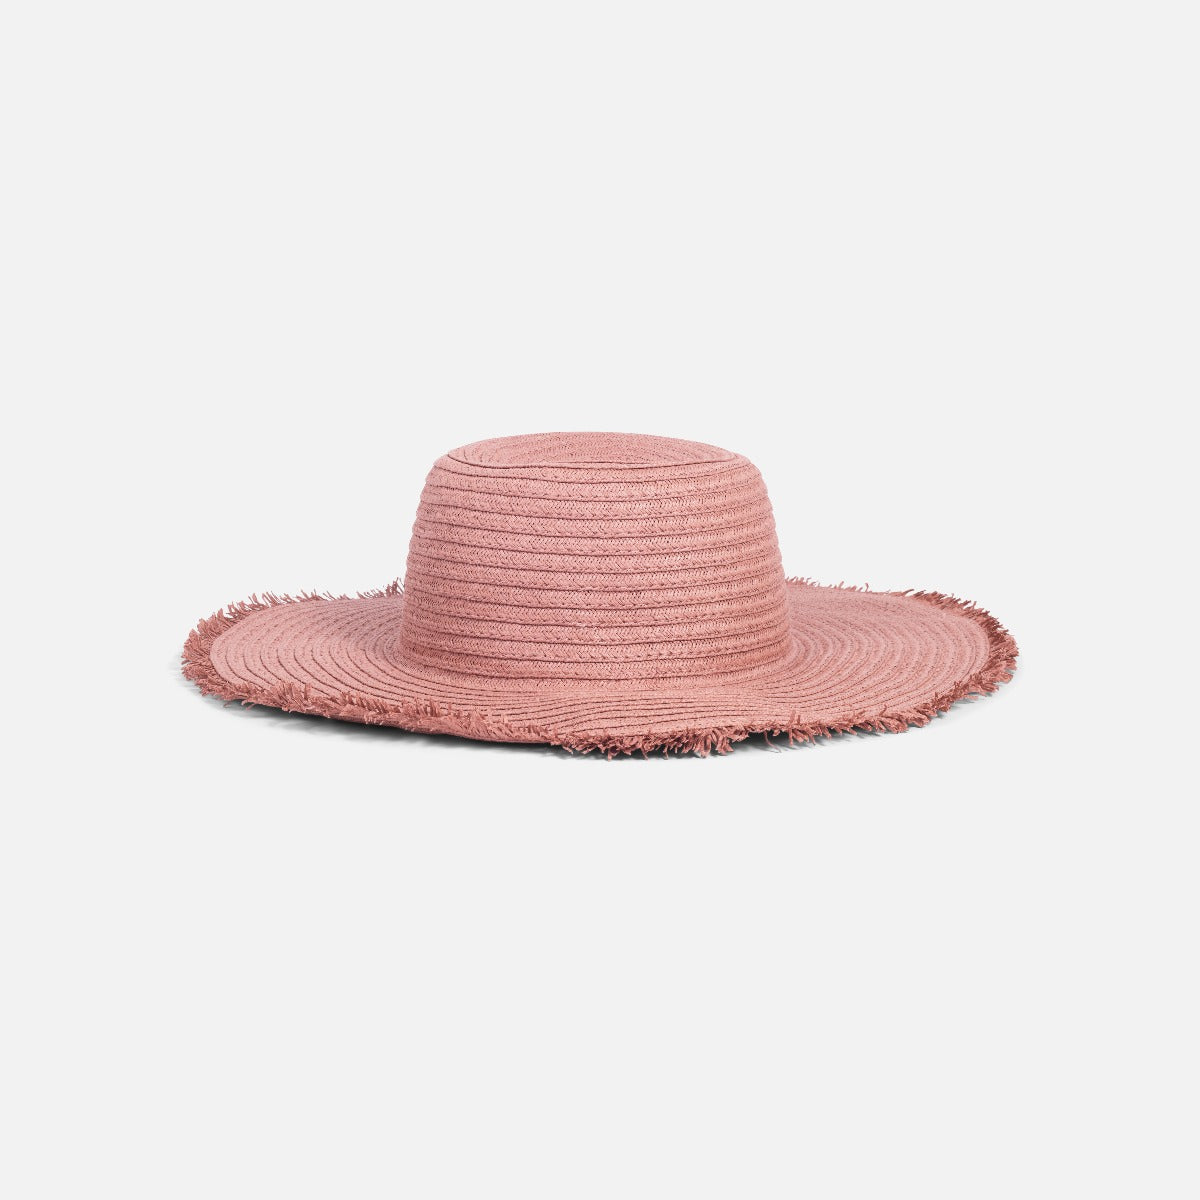 Chapeau rose en paille ajustable avec pourtour à franges